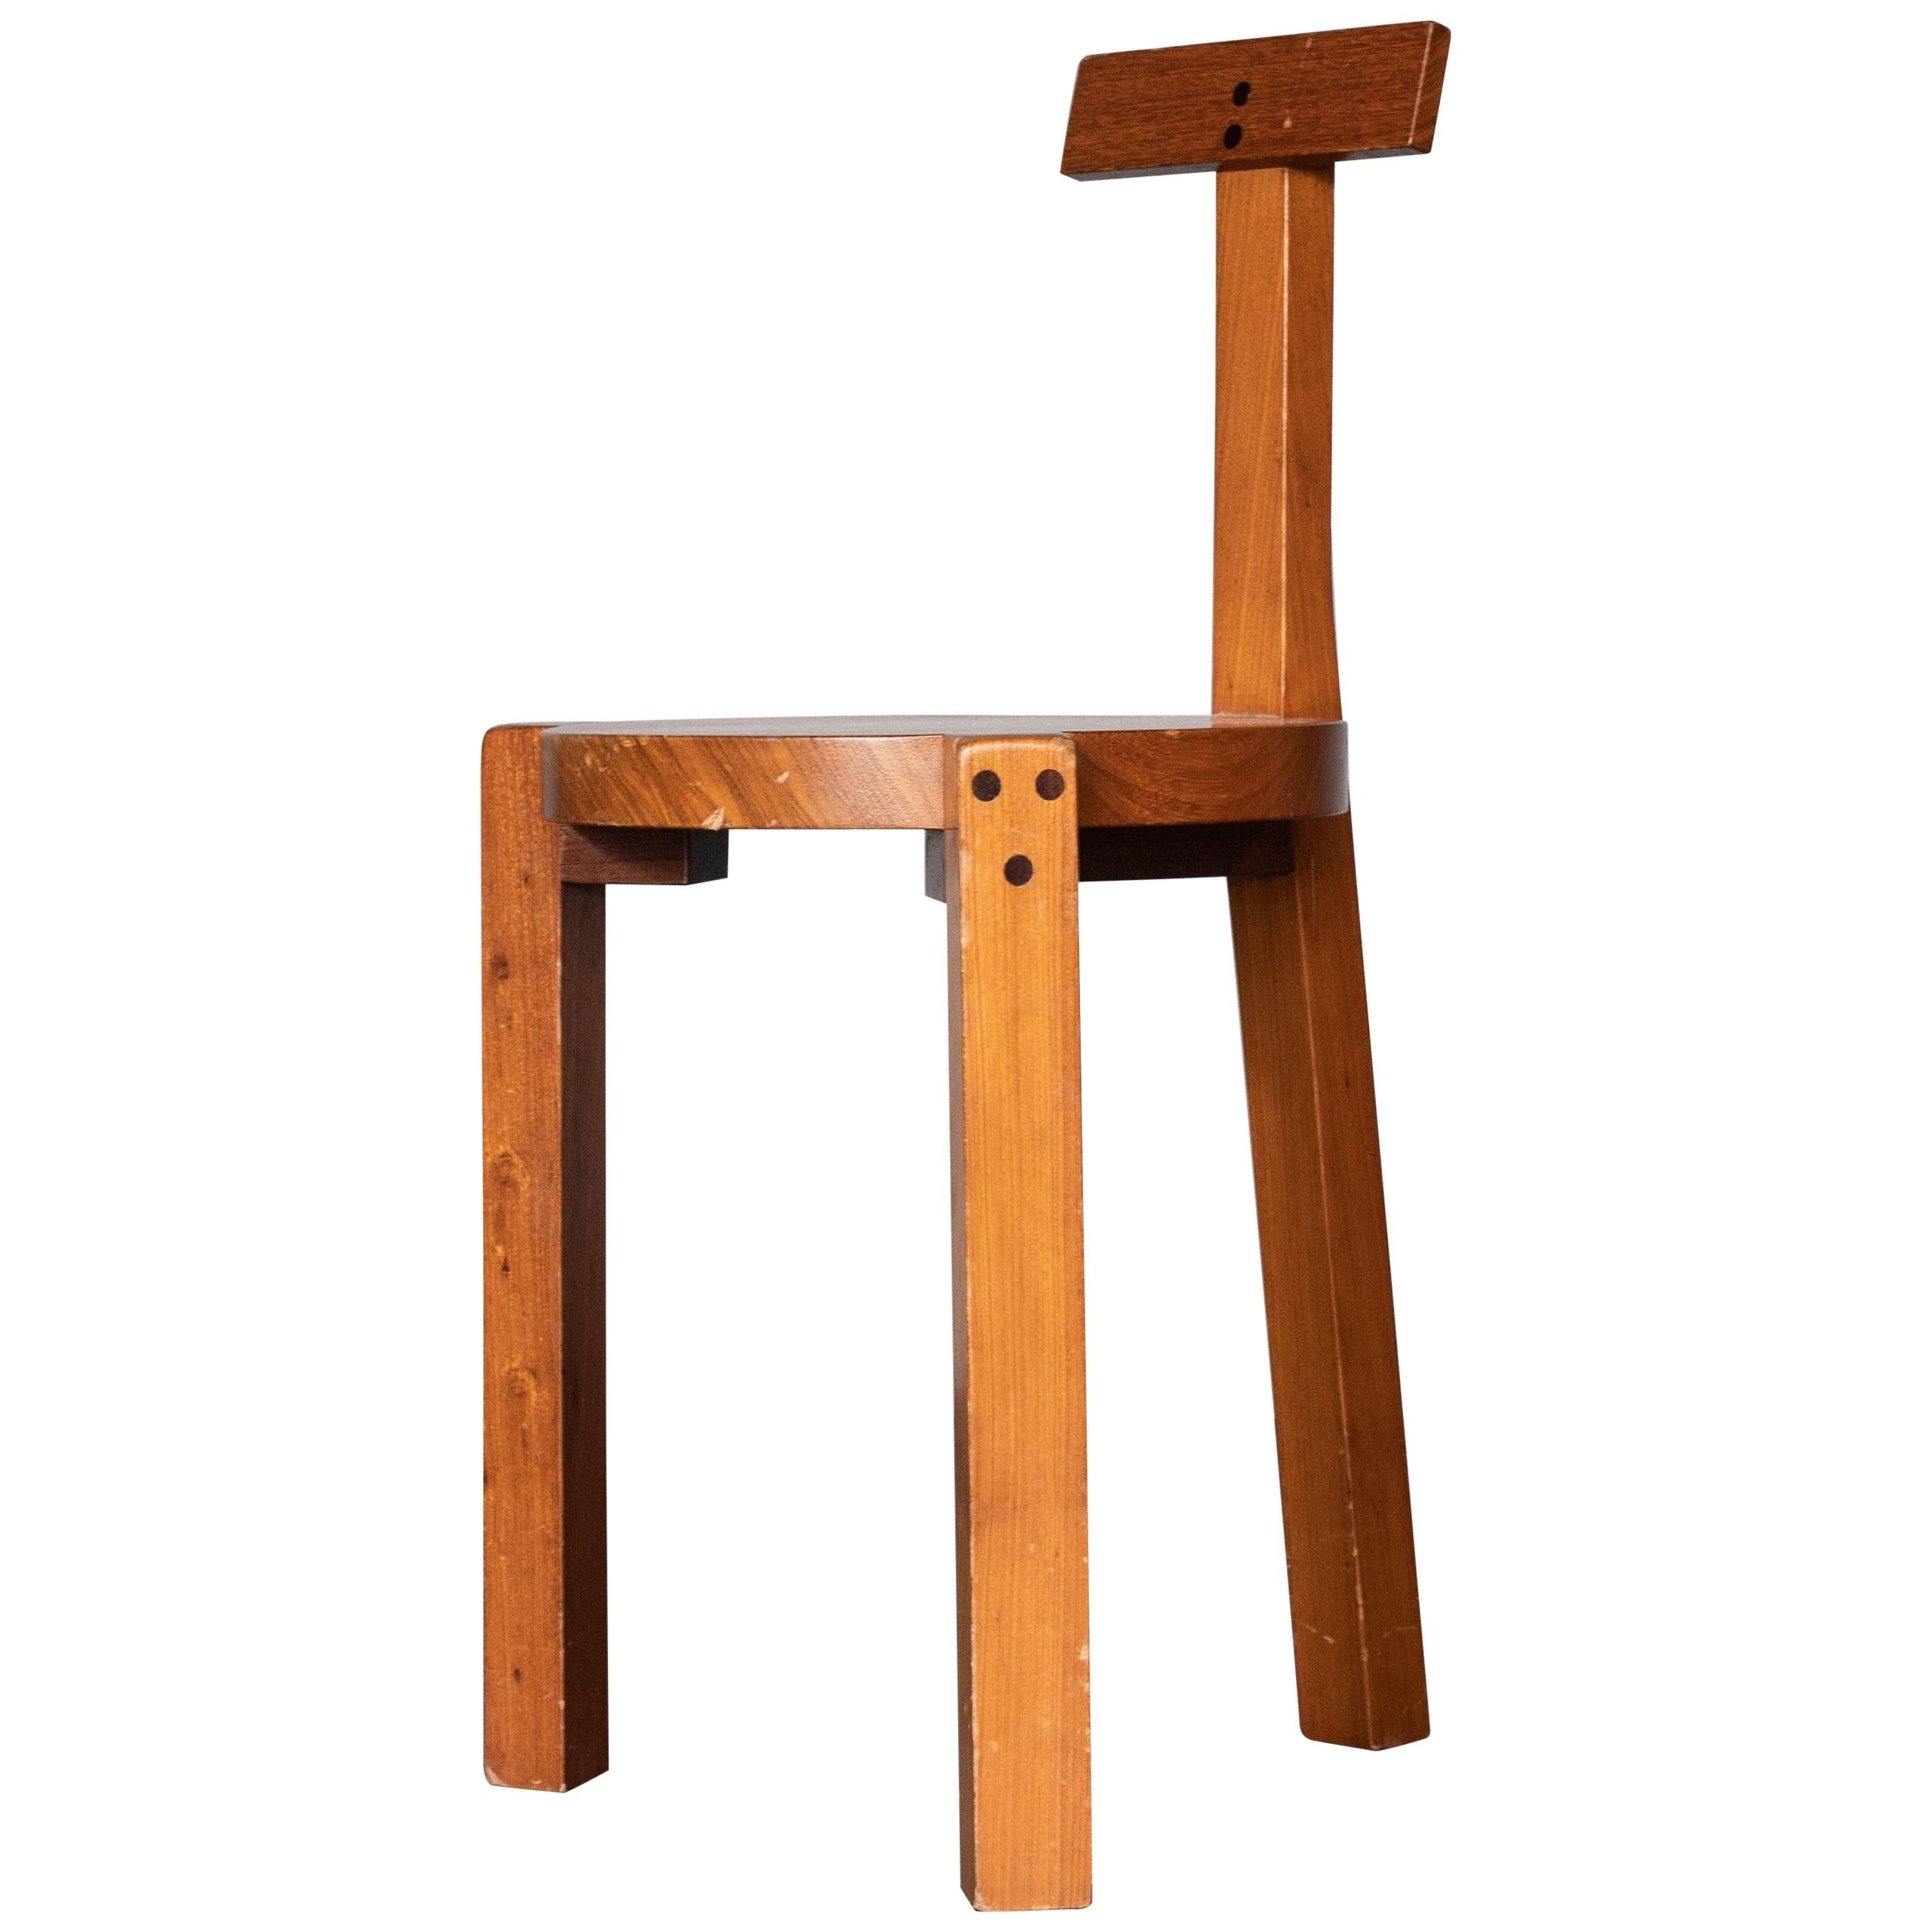 'Giraffe Chair' Lina Bo Bardi, 1980s